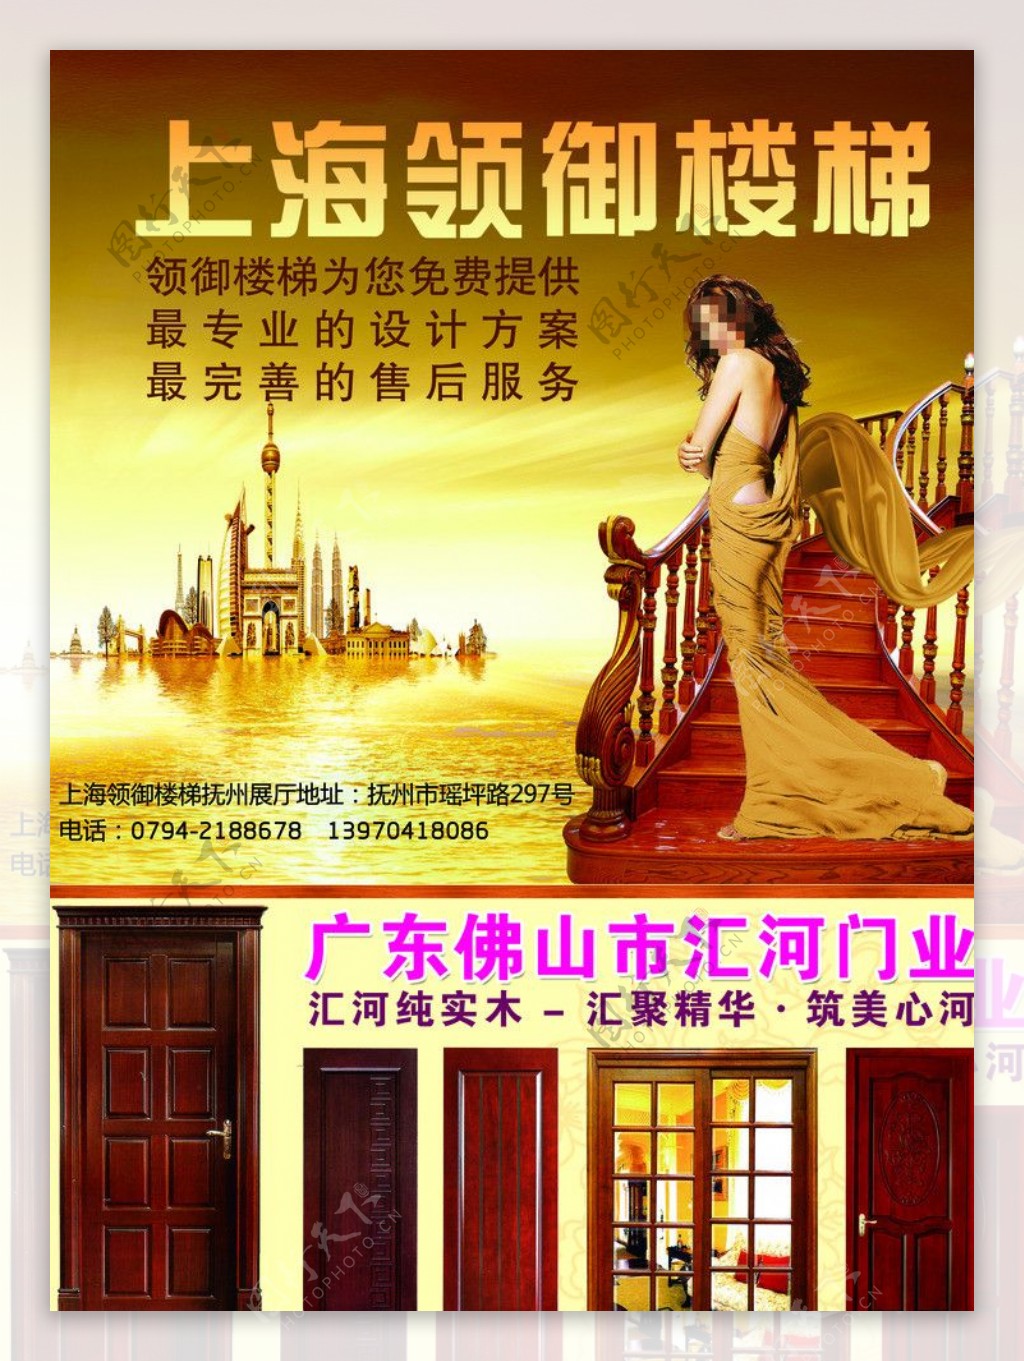 上海领御楼梯图片